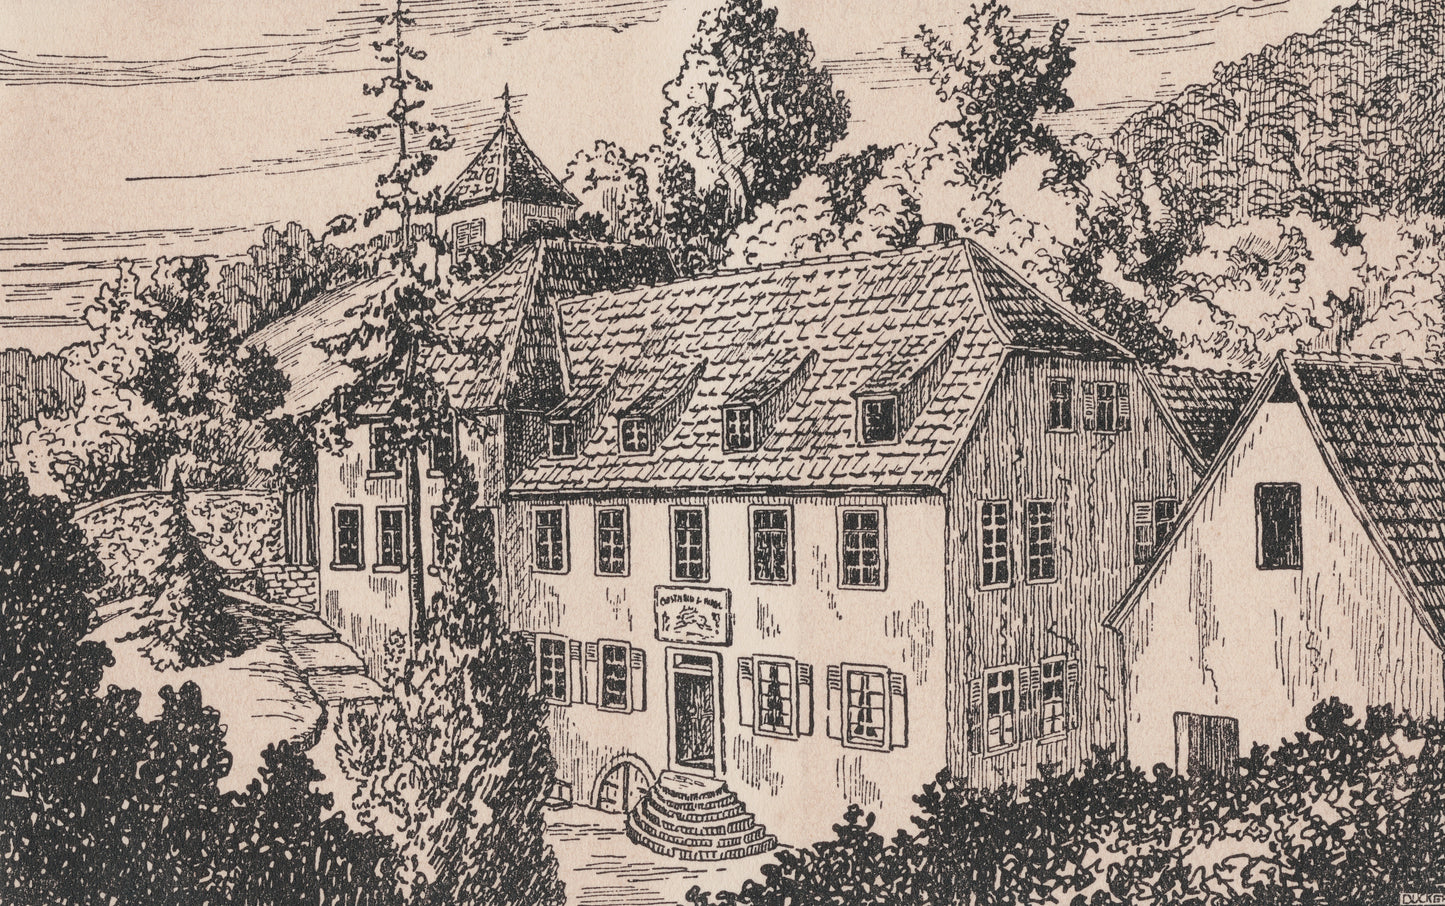 Guesthouse, Heidelberg